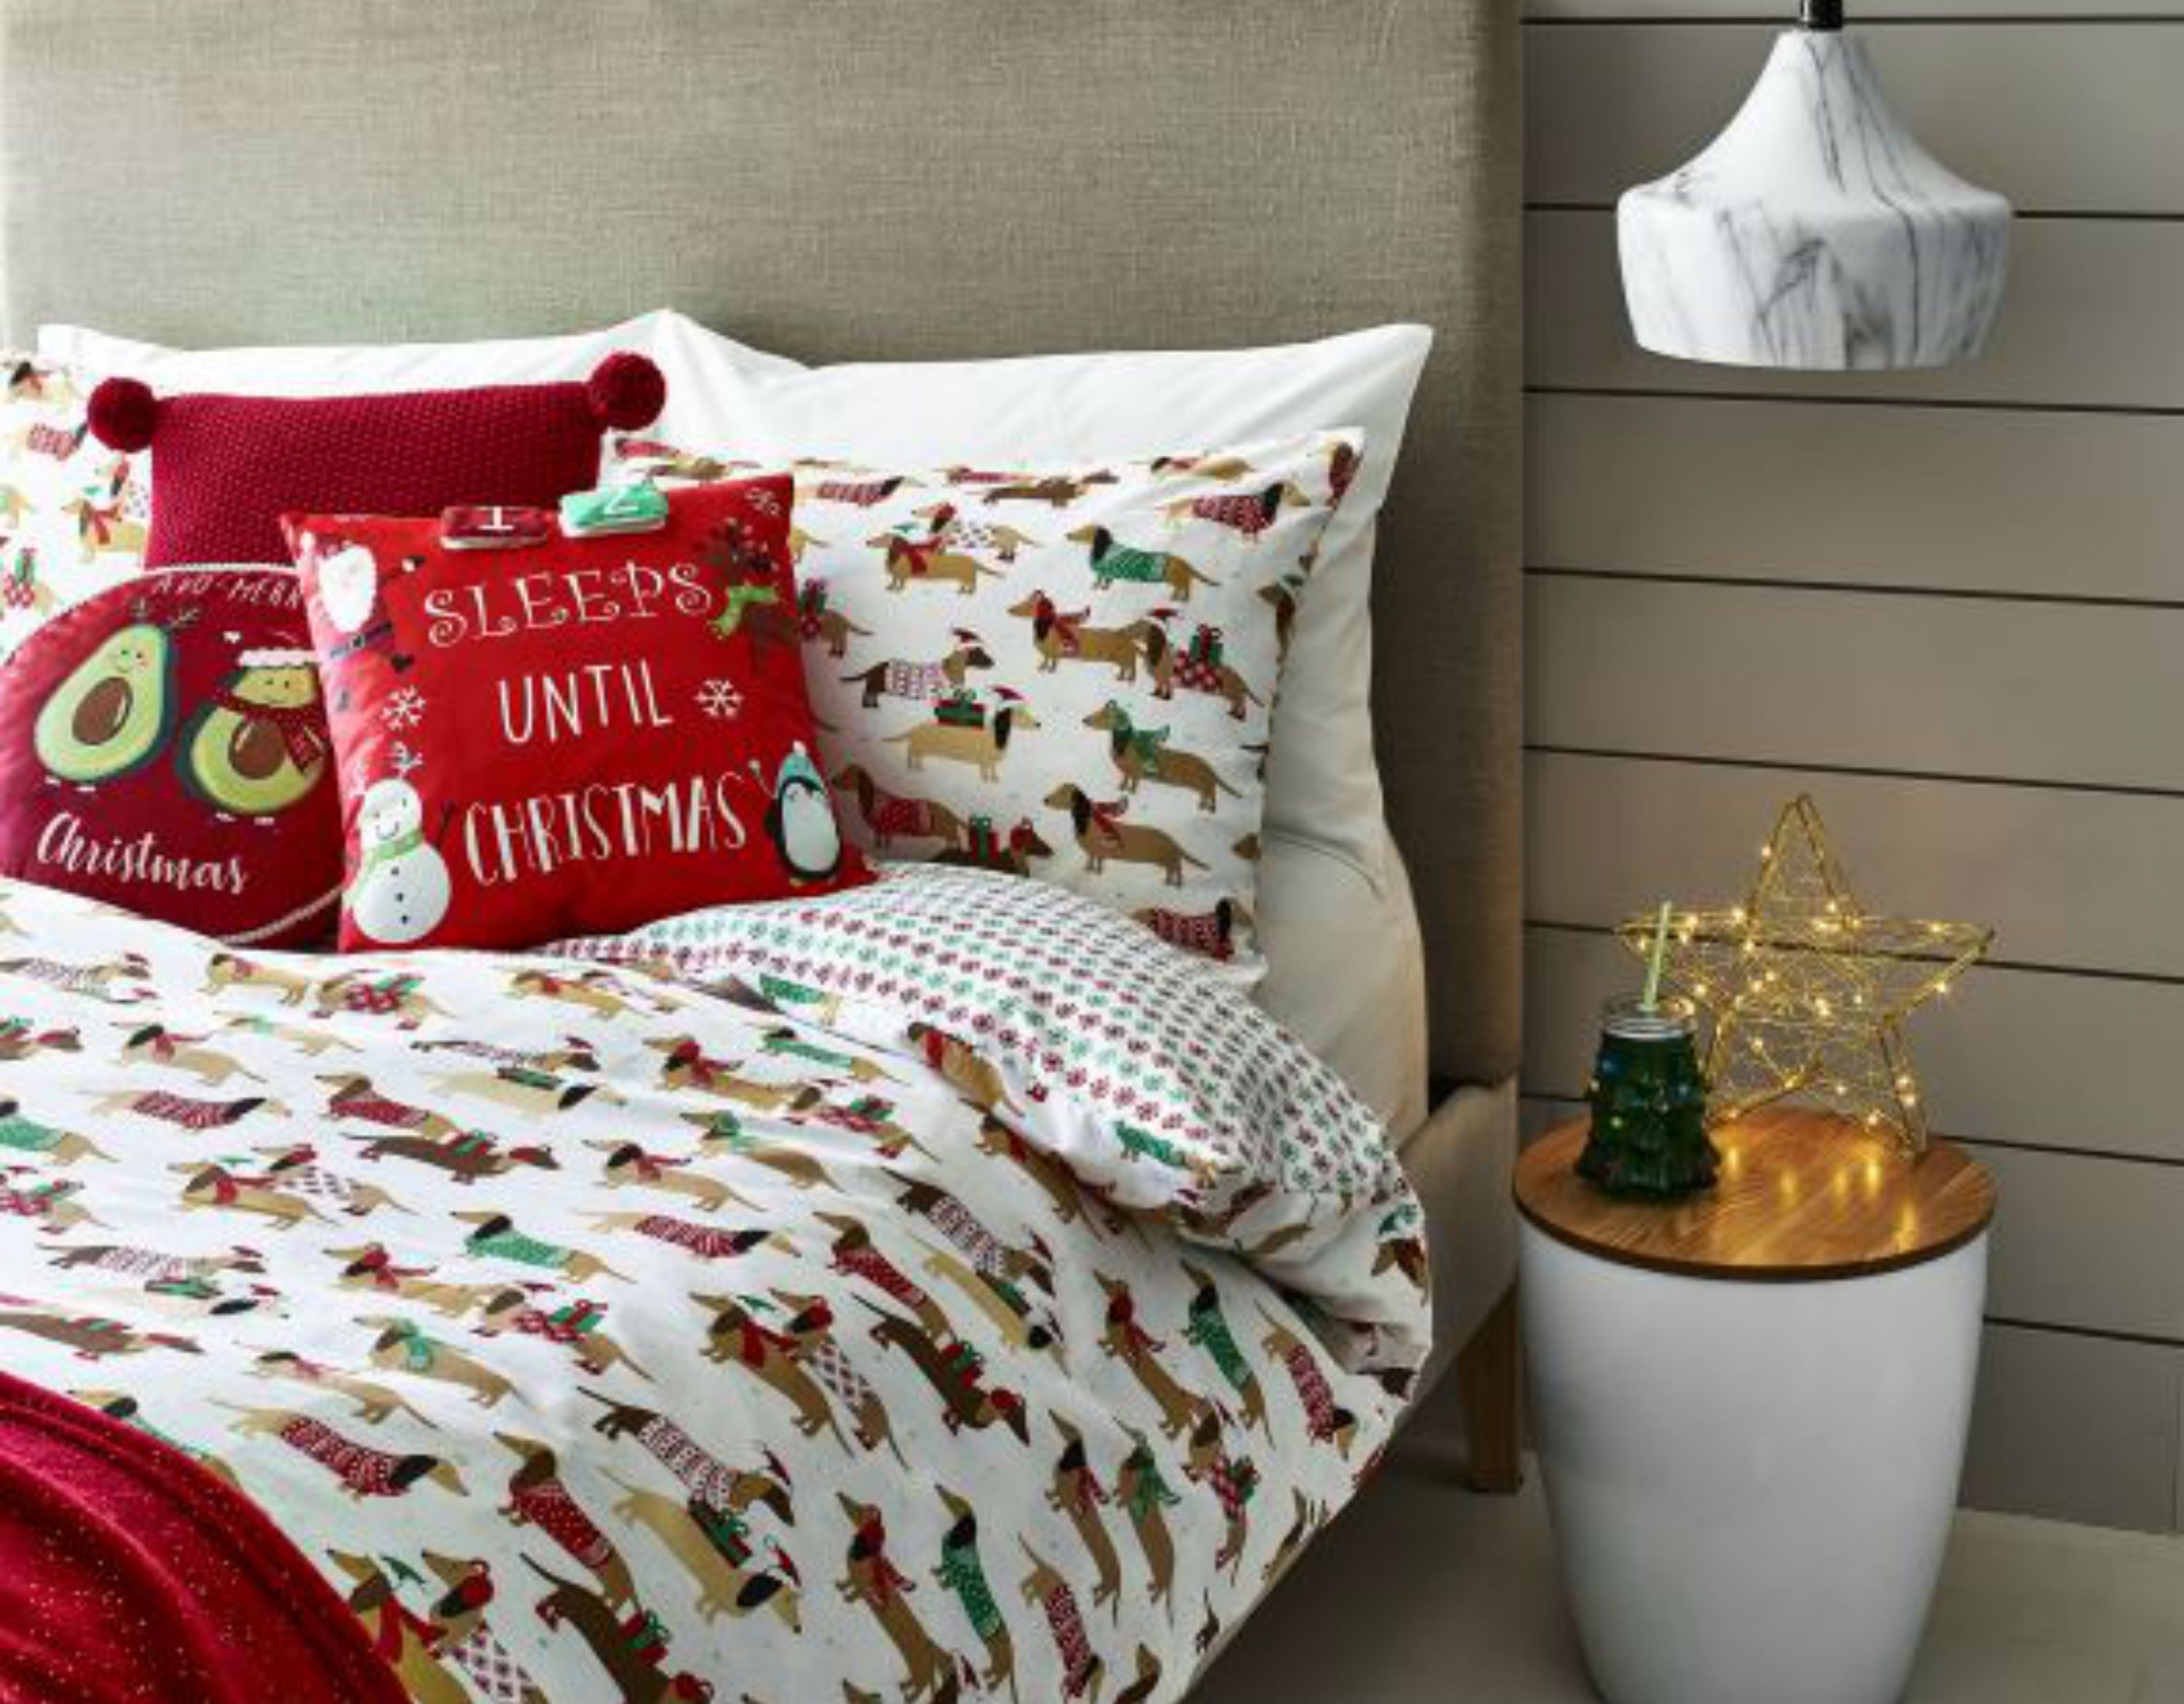 Asda's Christmas Bedding Is Back! The